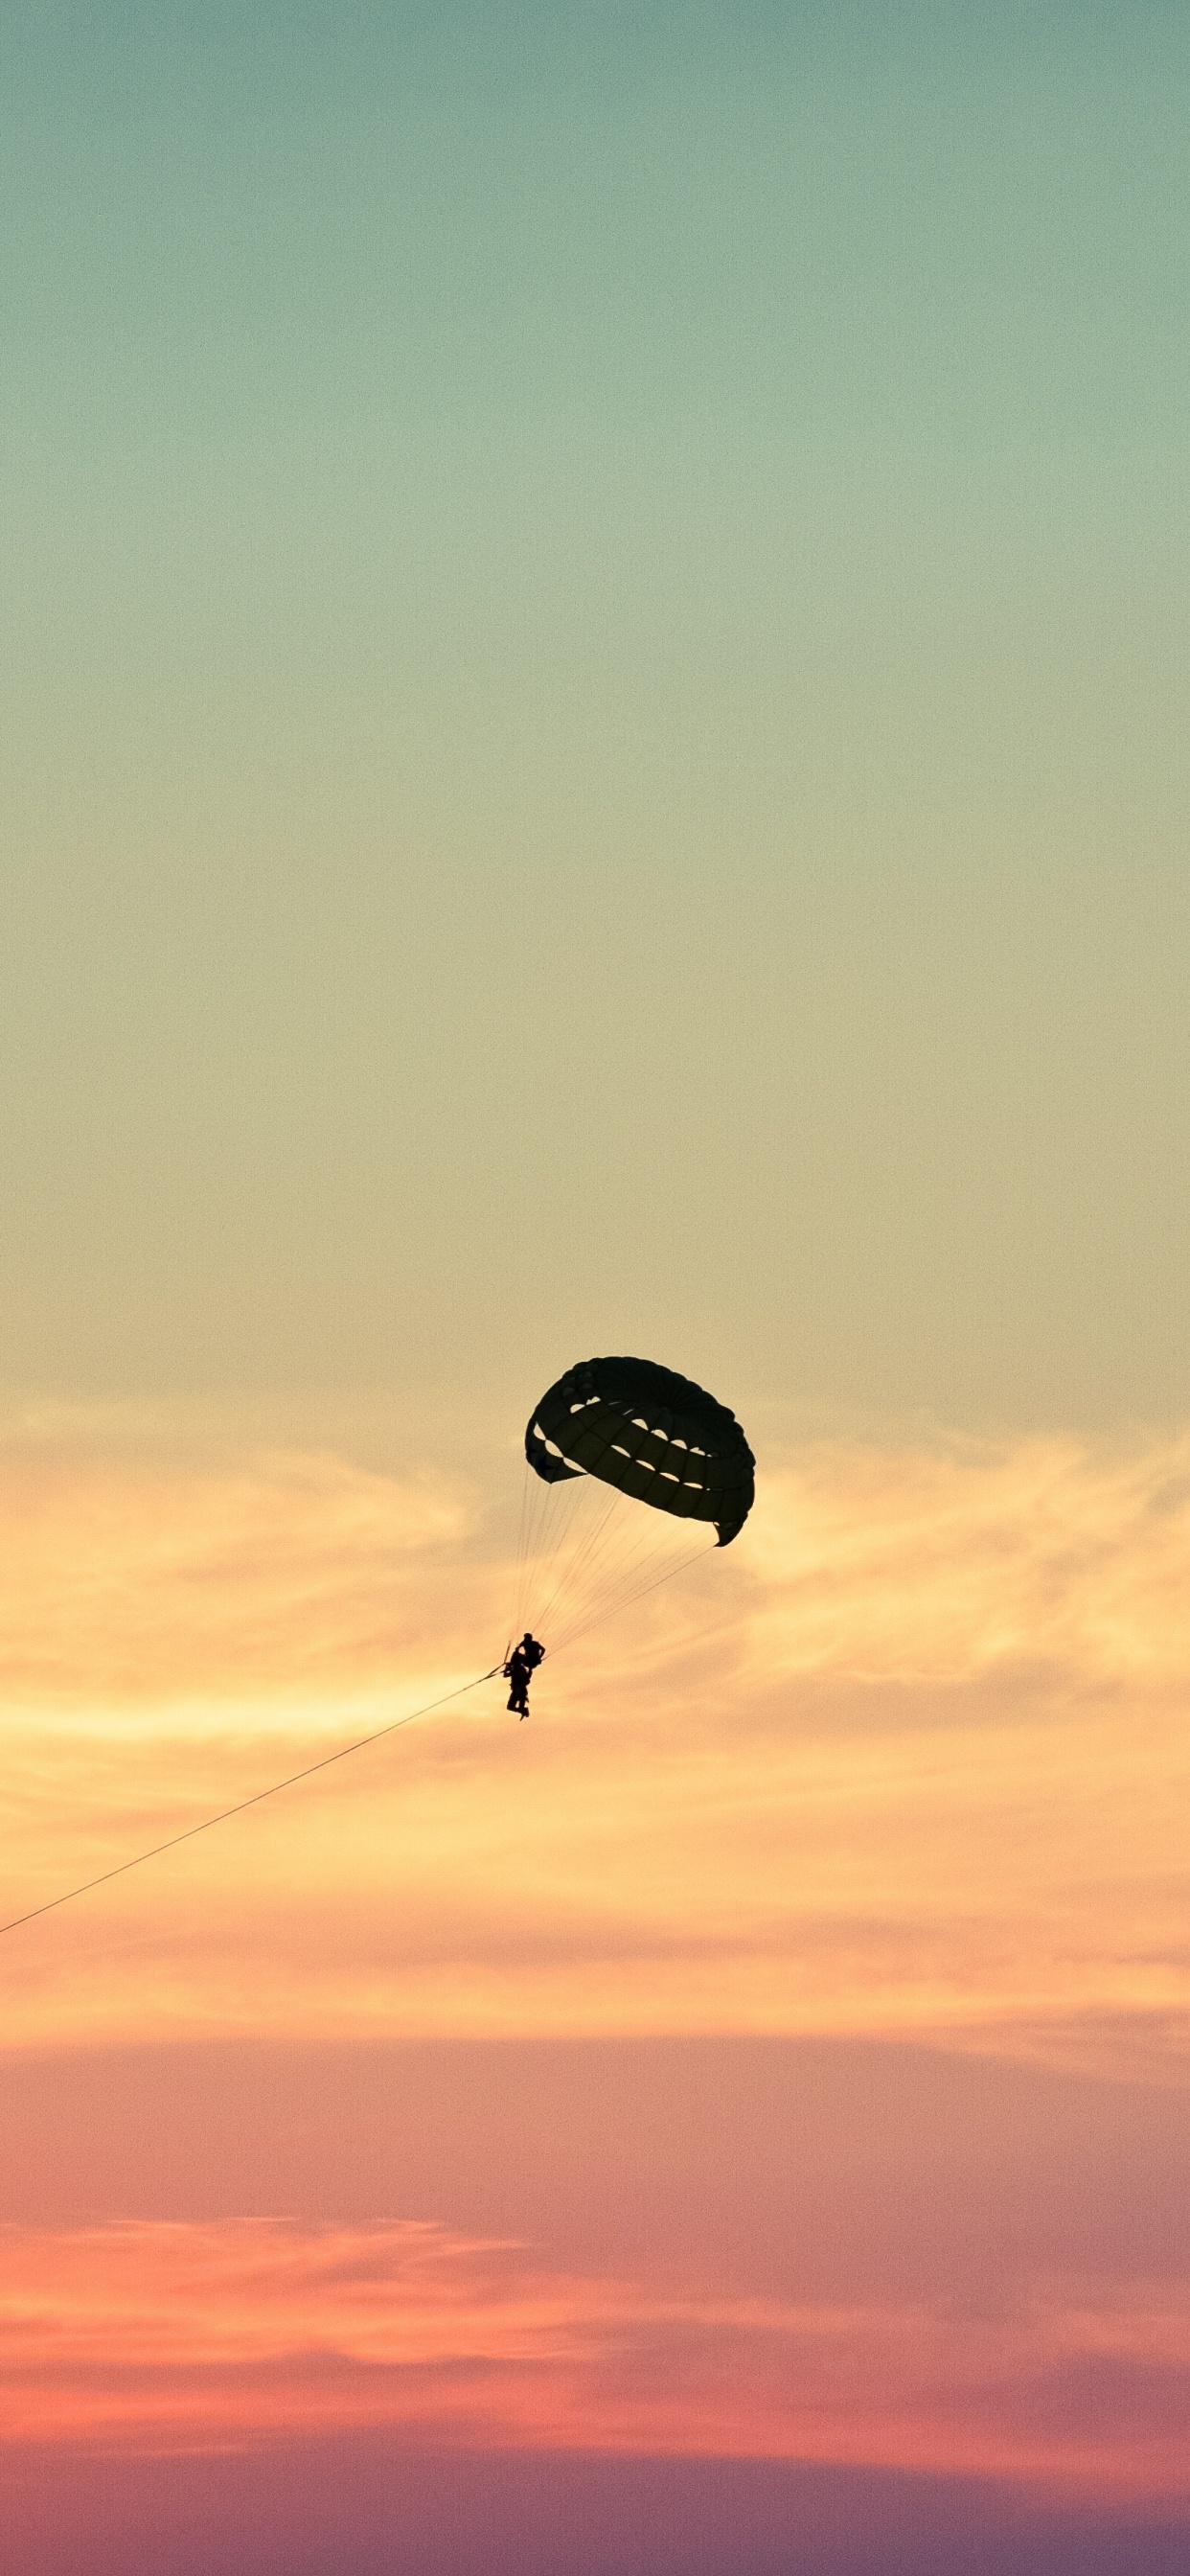 降落伞, 空中运动, 极限运动, 地平线, 伞兵 壁纸 1242x2688 允许